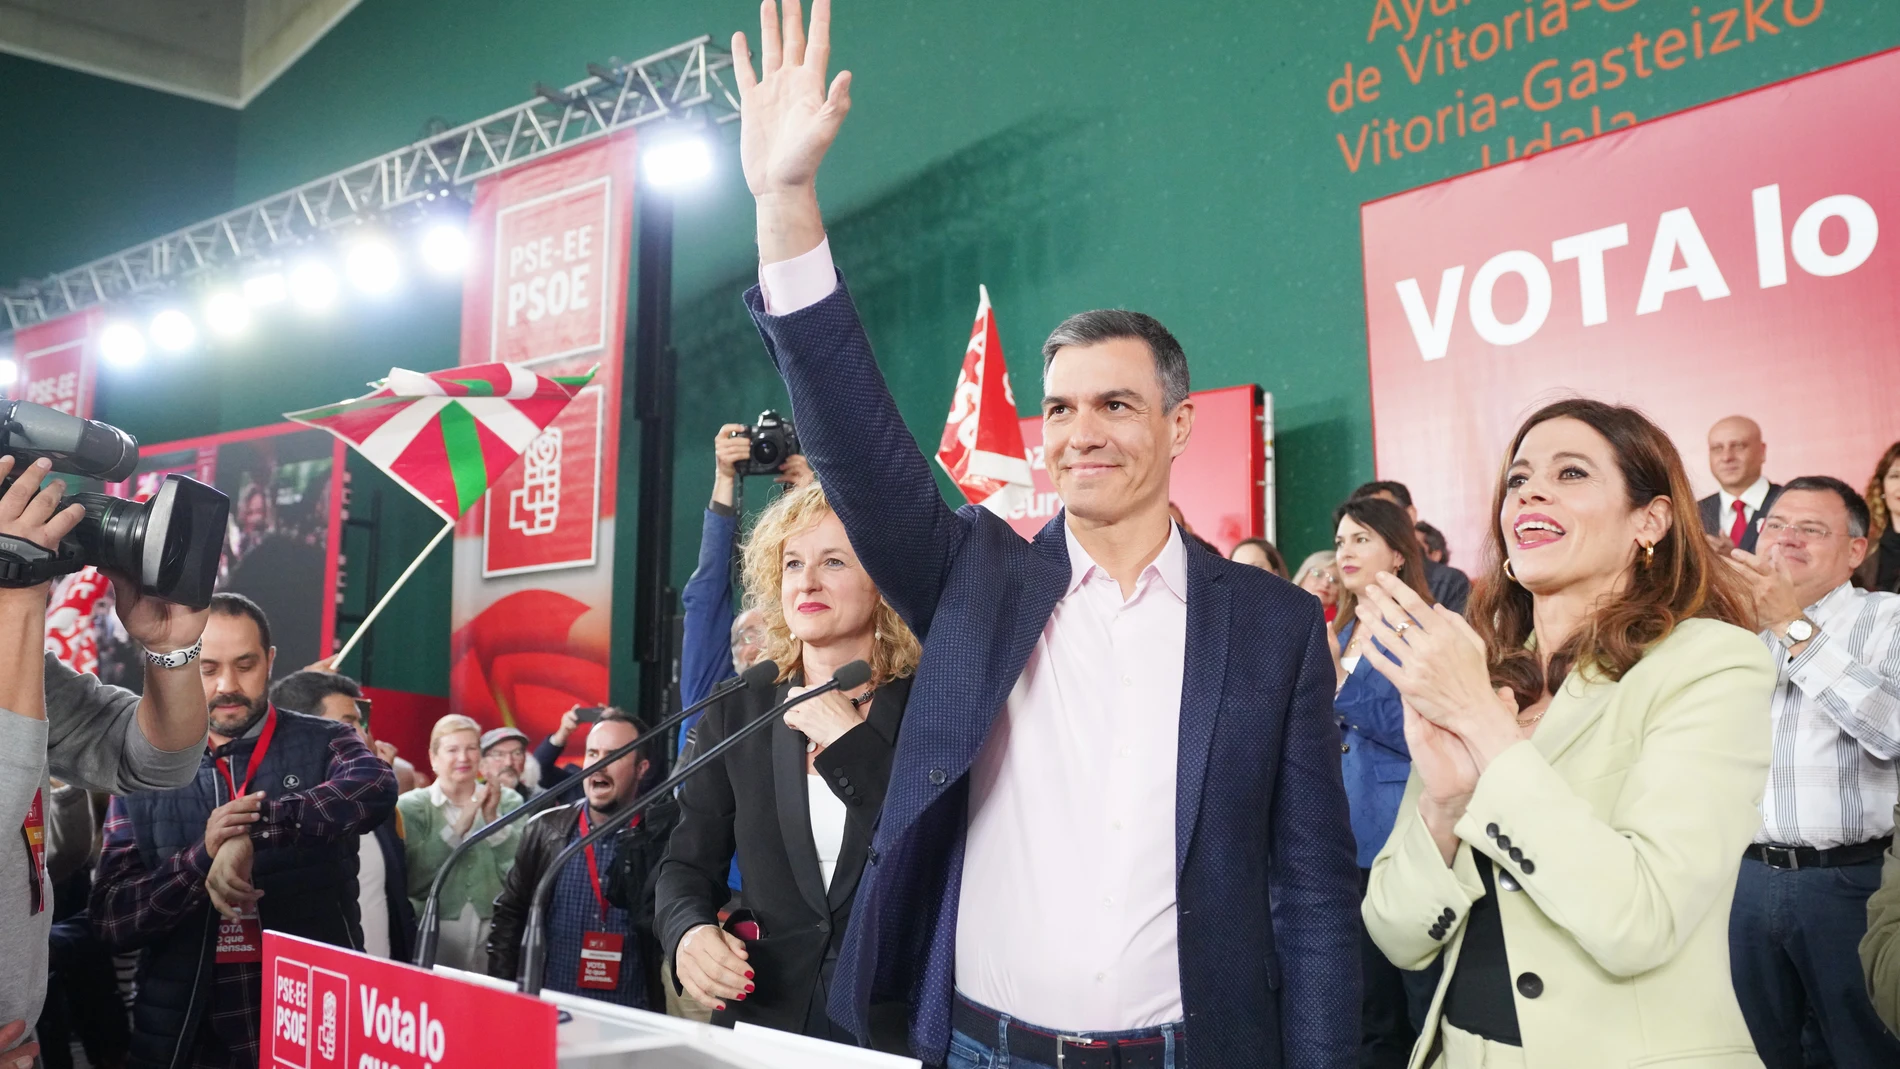 VÍDEO: Sánchez afirma que el PP "no puede soportar" que la "derrota" de ETA fuera bajo gobiernos socialistas